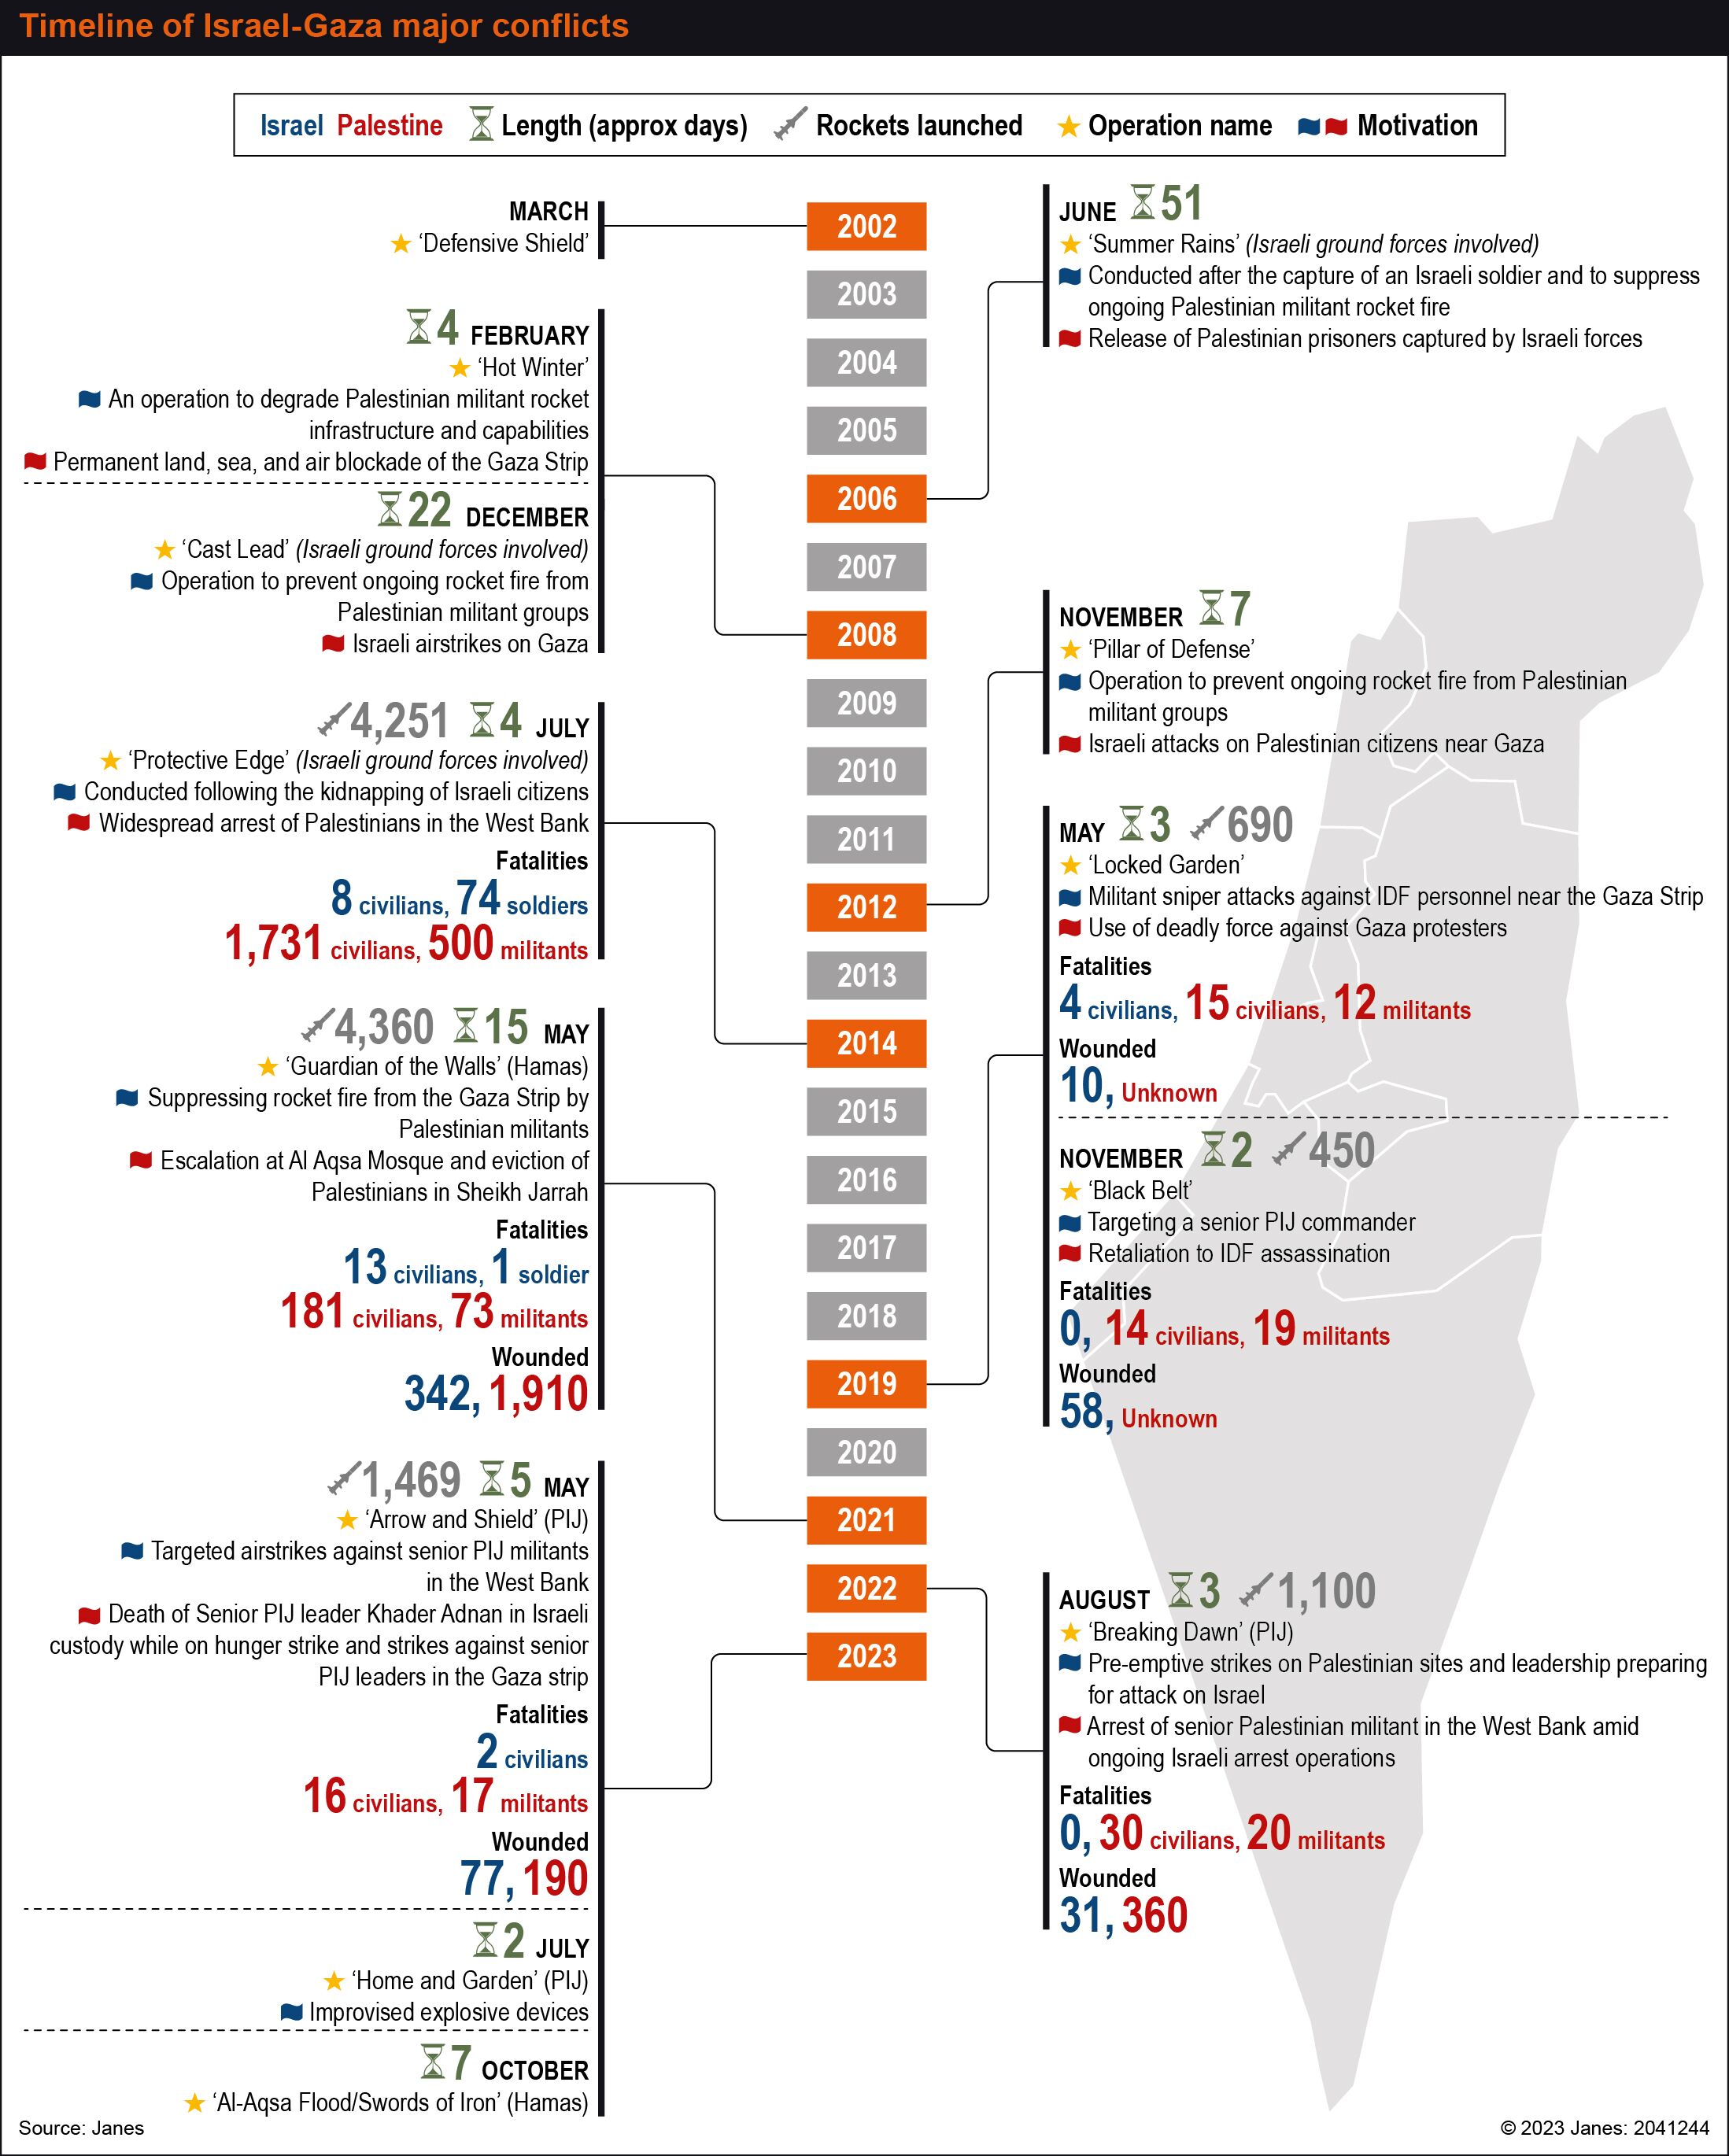 Timeline of Israel-Gaza major conflicts. (Janes)